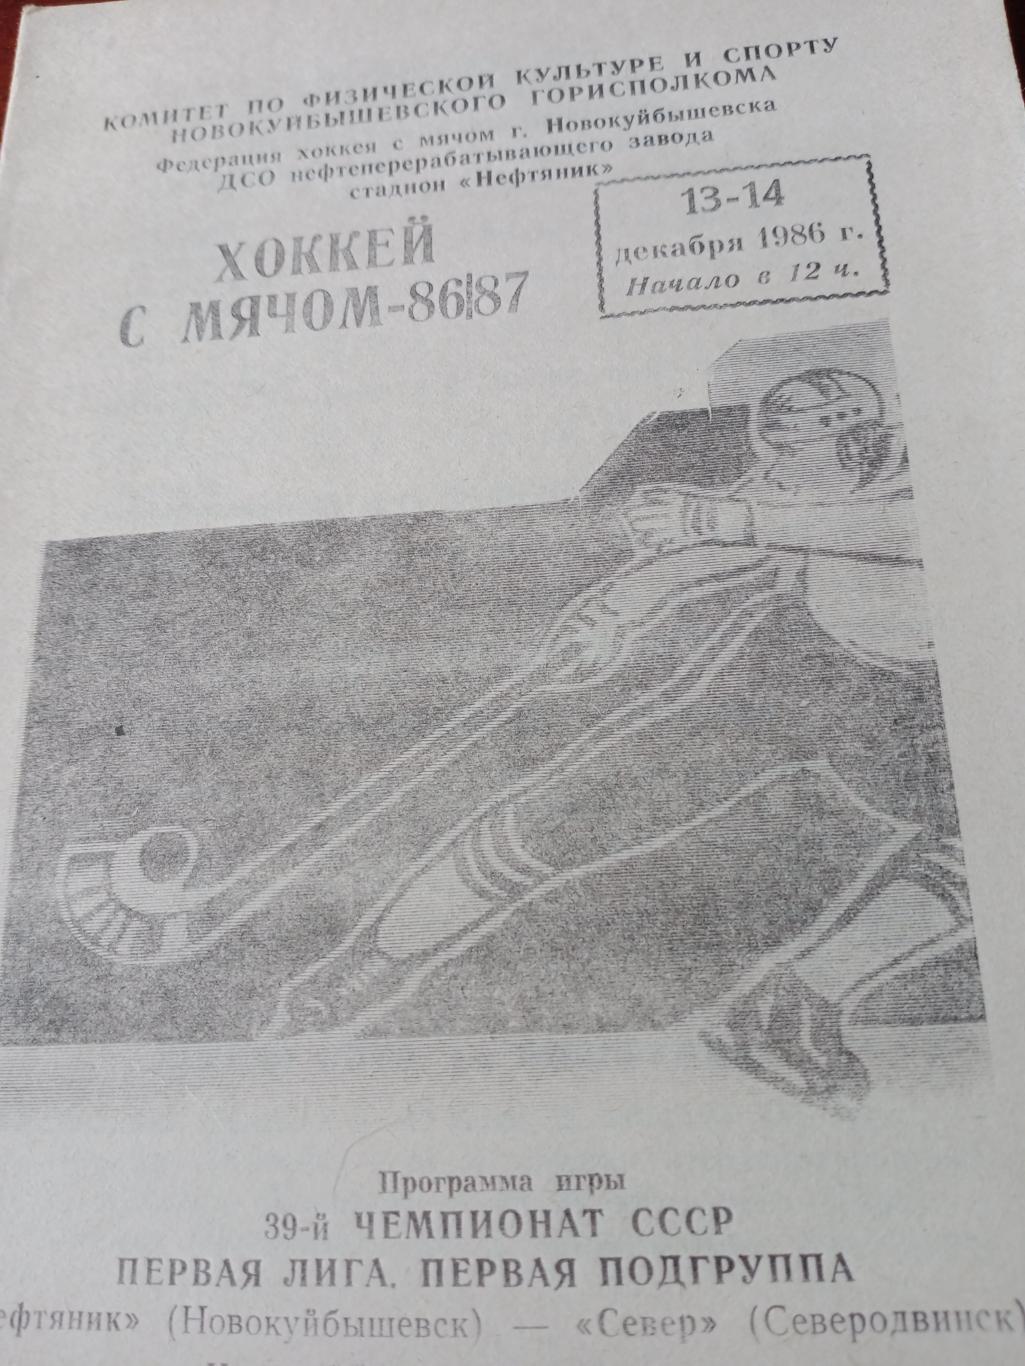 Хоккей с мячом. Новокуйбышевск - 1986/87